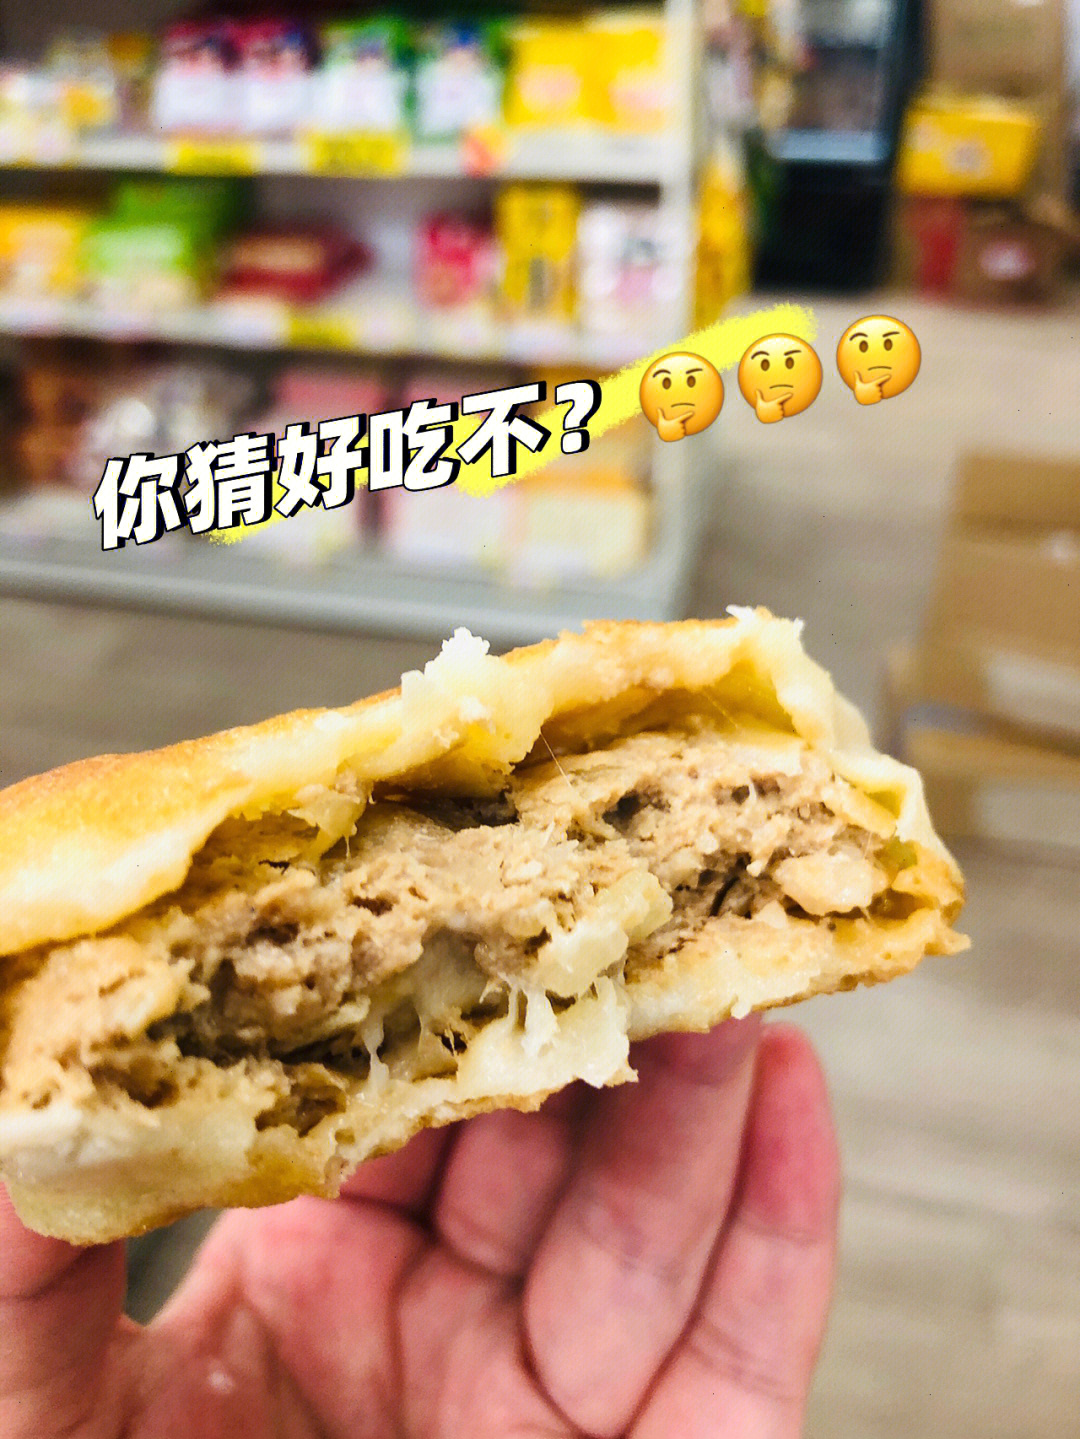 辽阳牛庄馅饼店图片